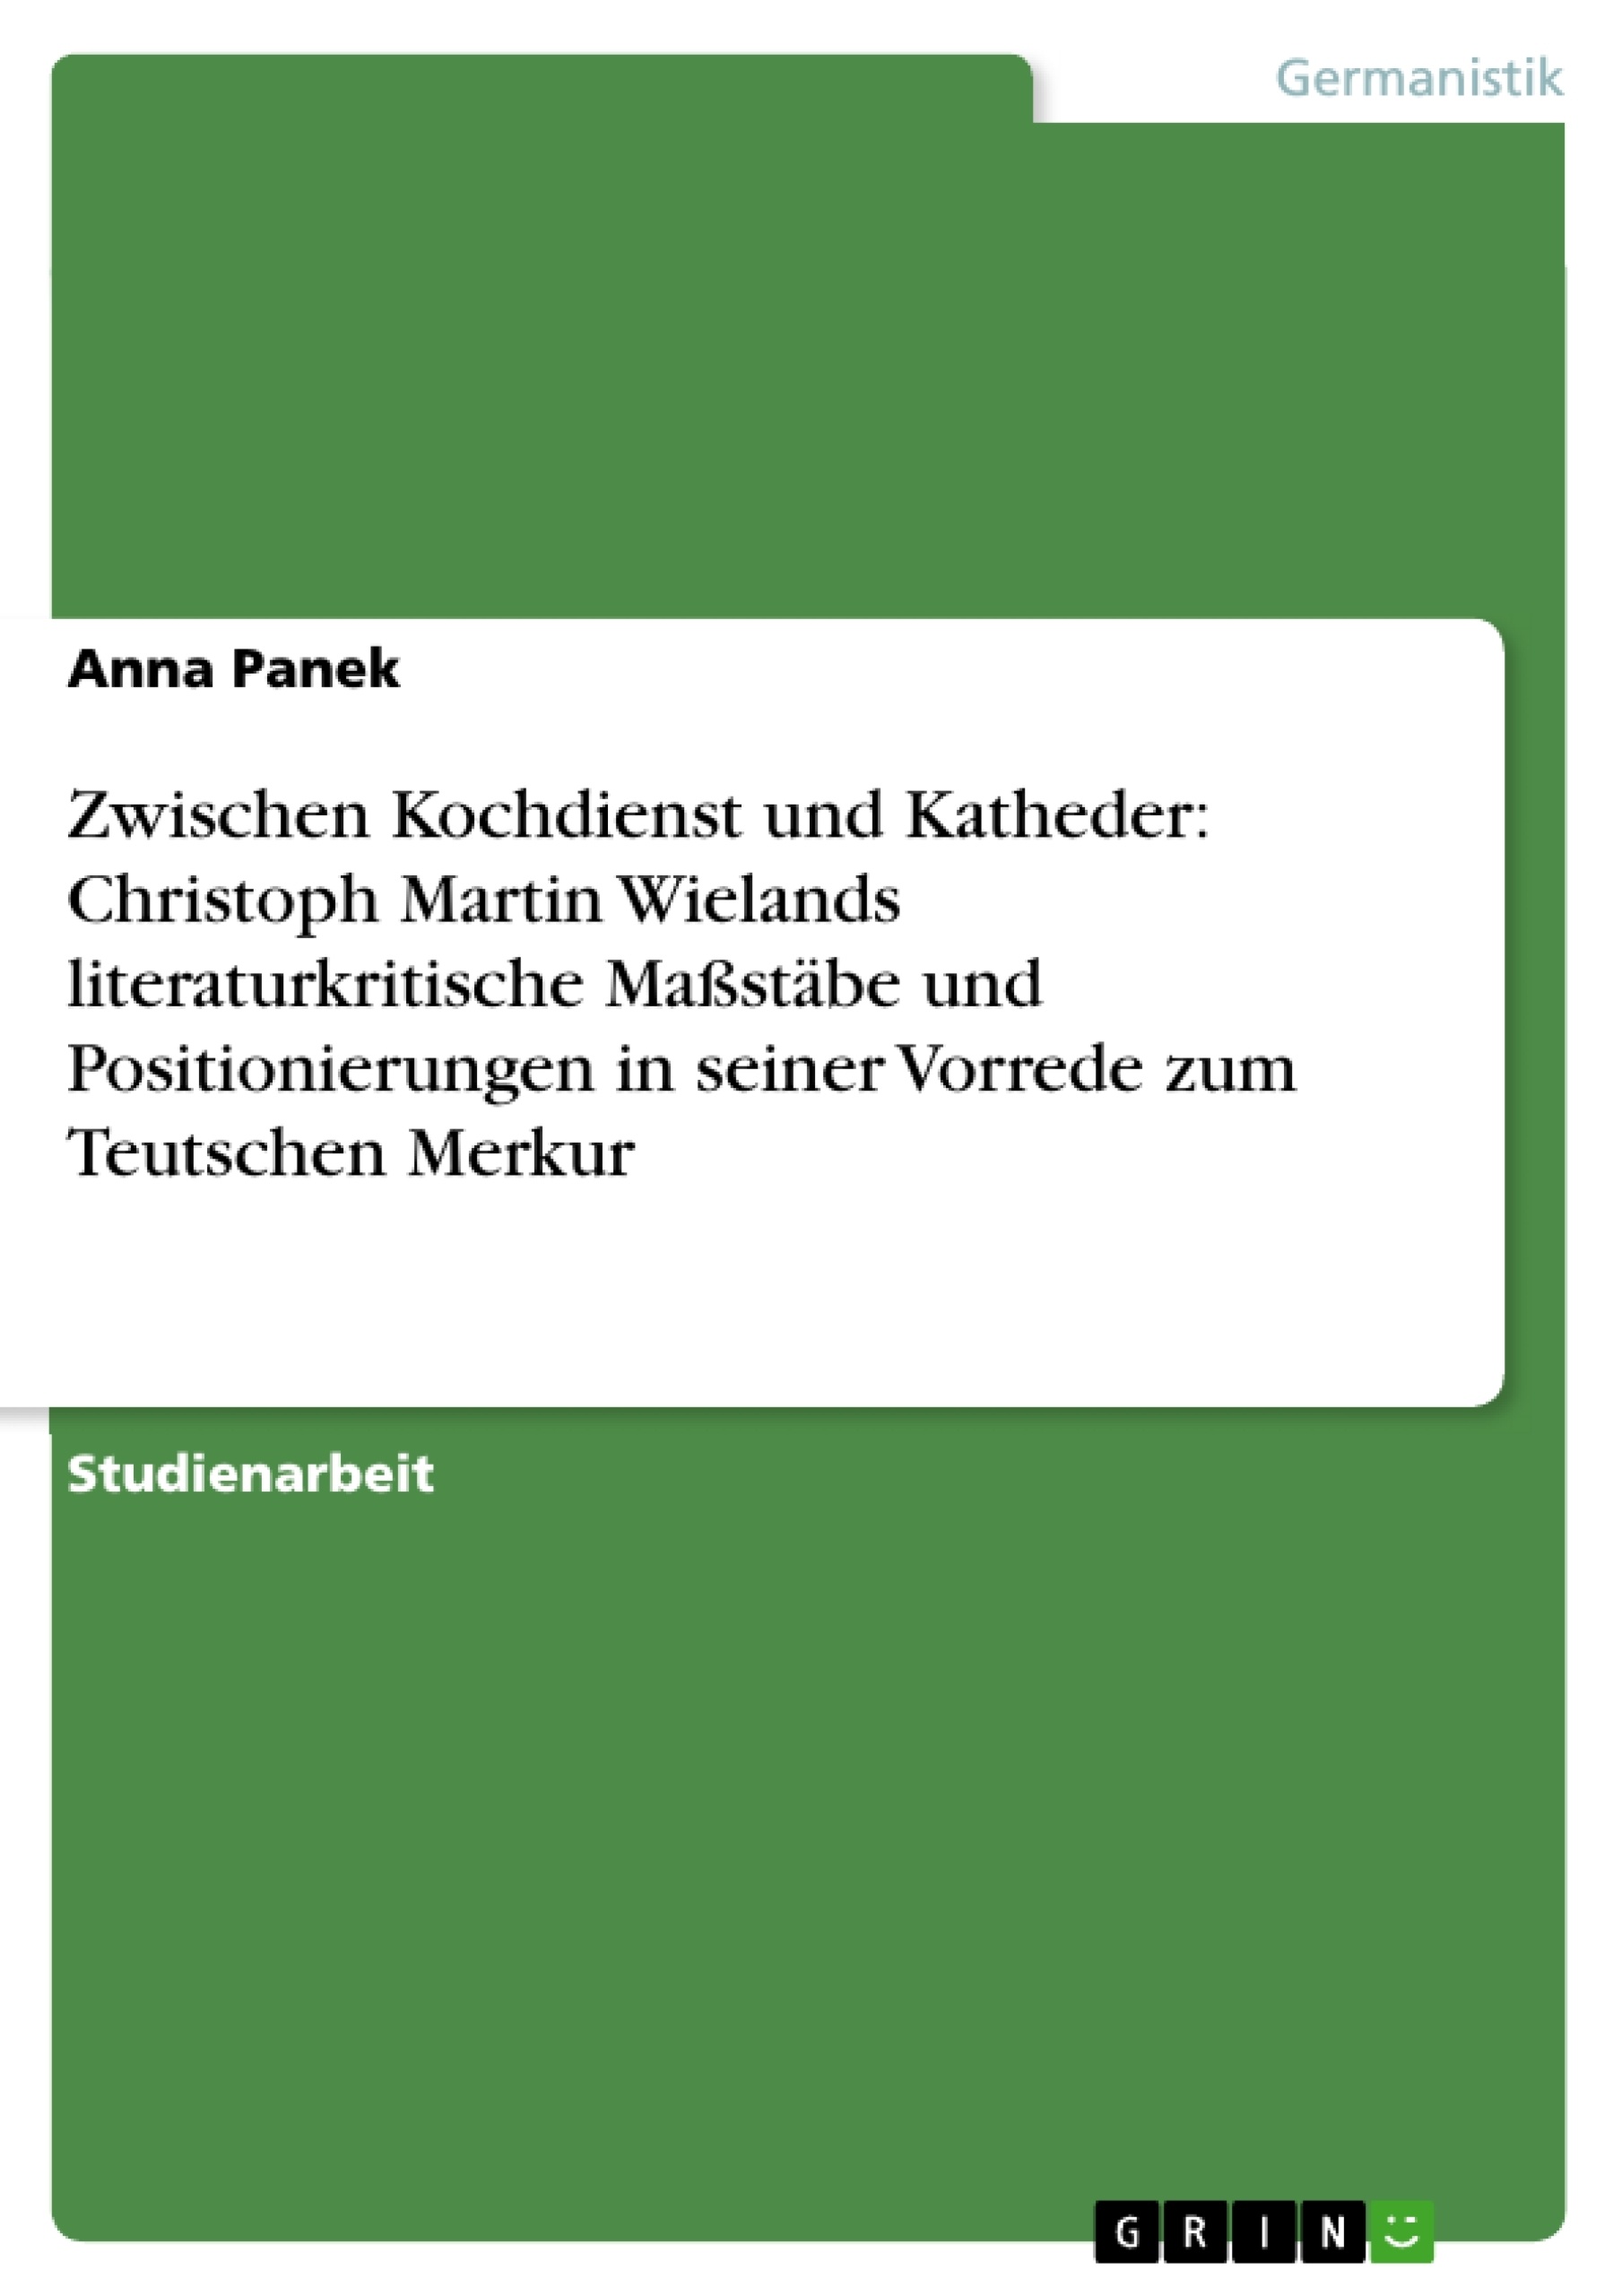 Titre: Zwischen Kochdienst und Katheder: Christoph Martin Wielands literaturkritische Maßstäbe und Positionierungen in seiner Vorrede zum Teutschen Merkur